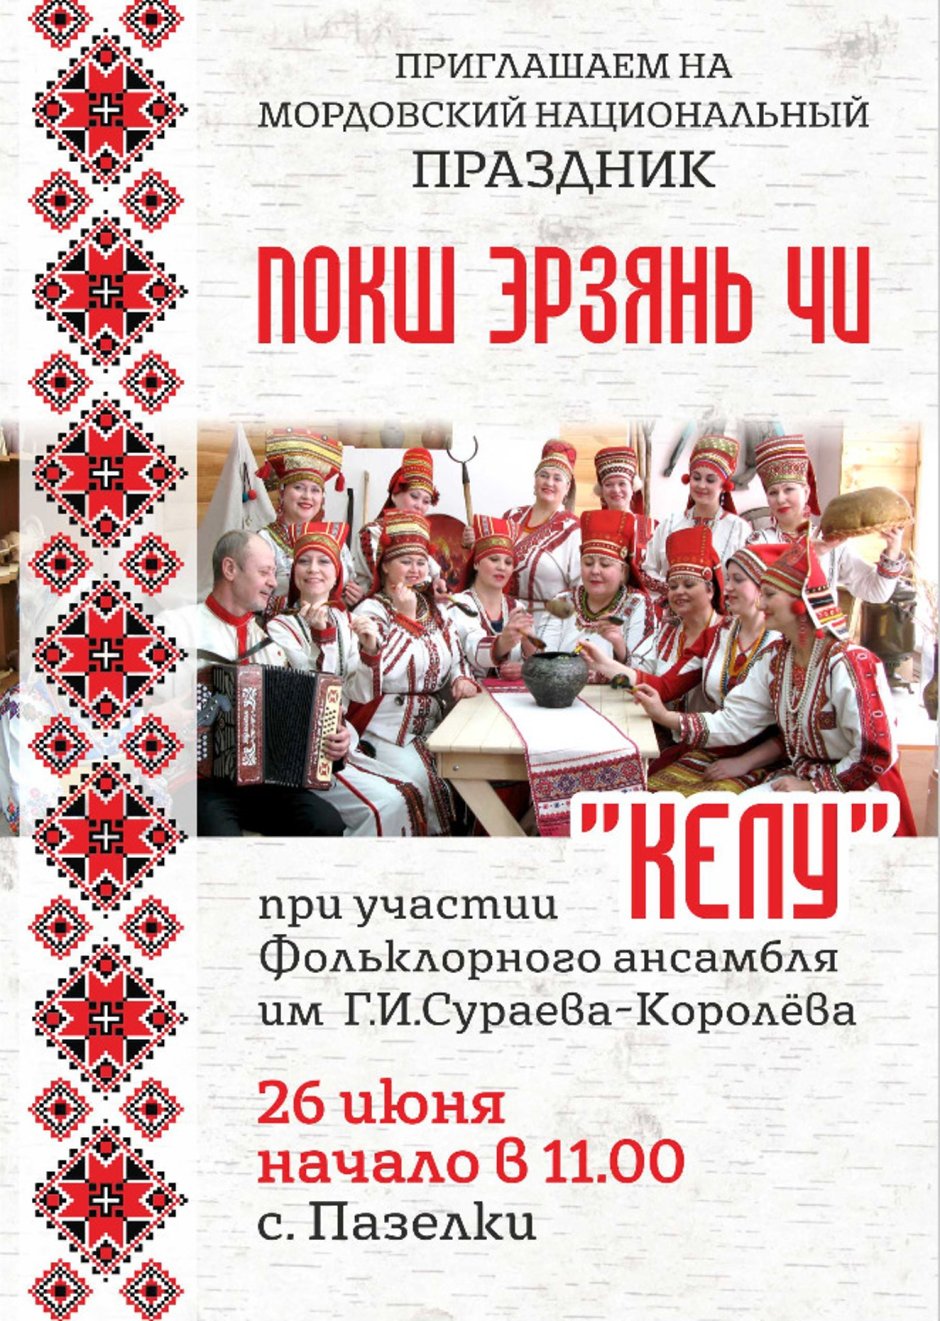 Мордовский национальный праздник акша келу